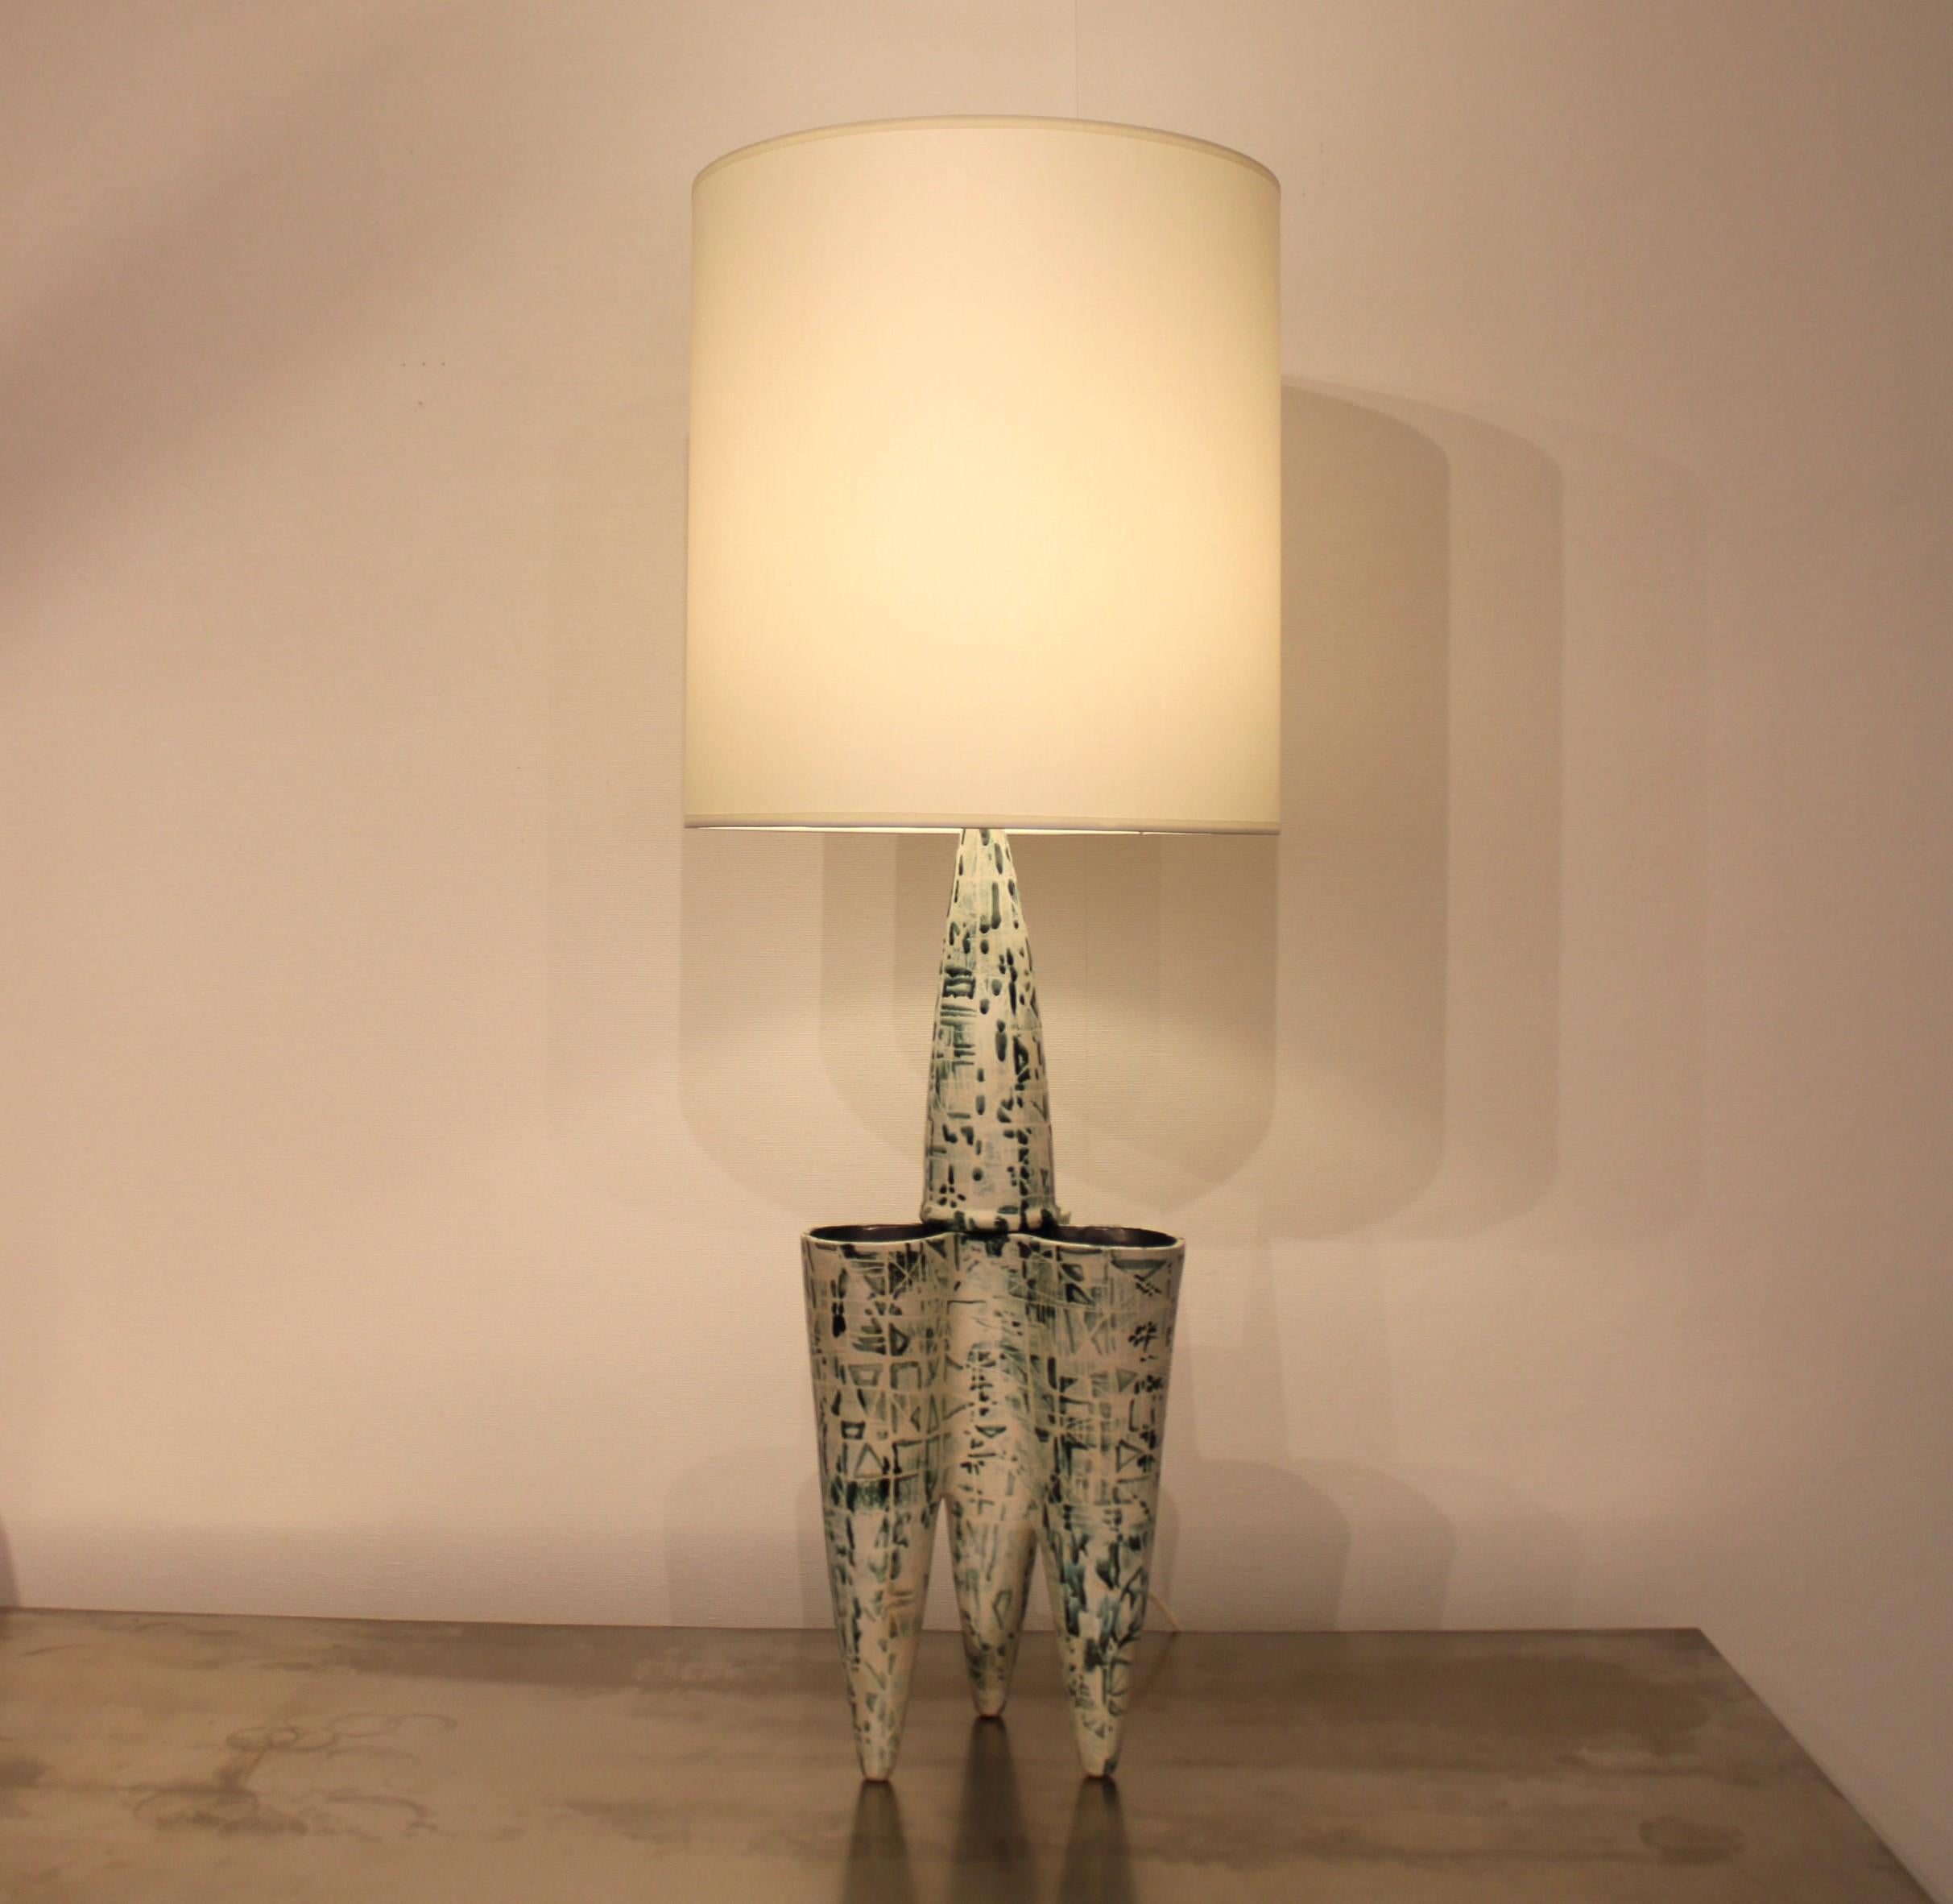 Robert Bonfil (1886-1972)
Ceramic tripod lamp 
Signed 